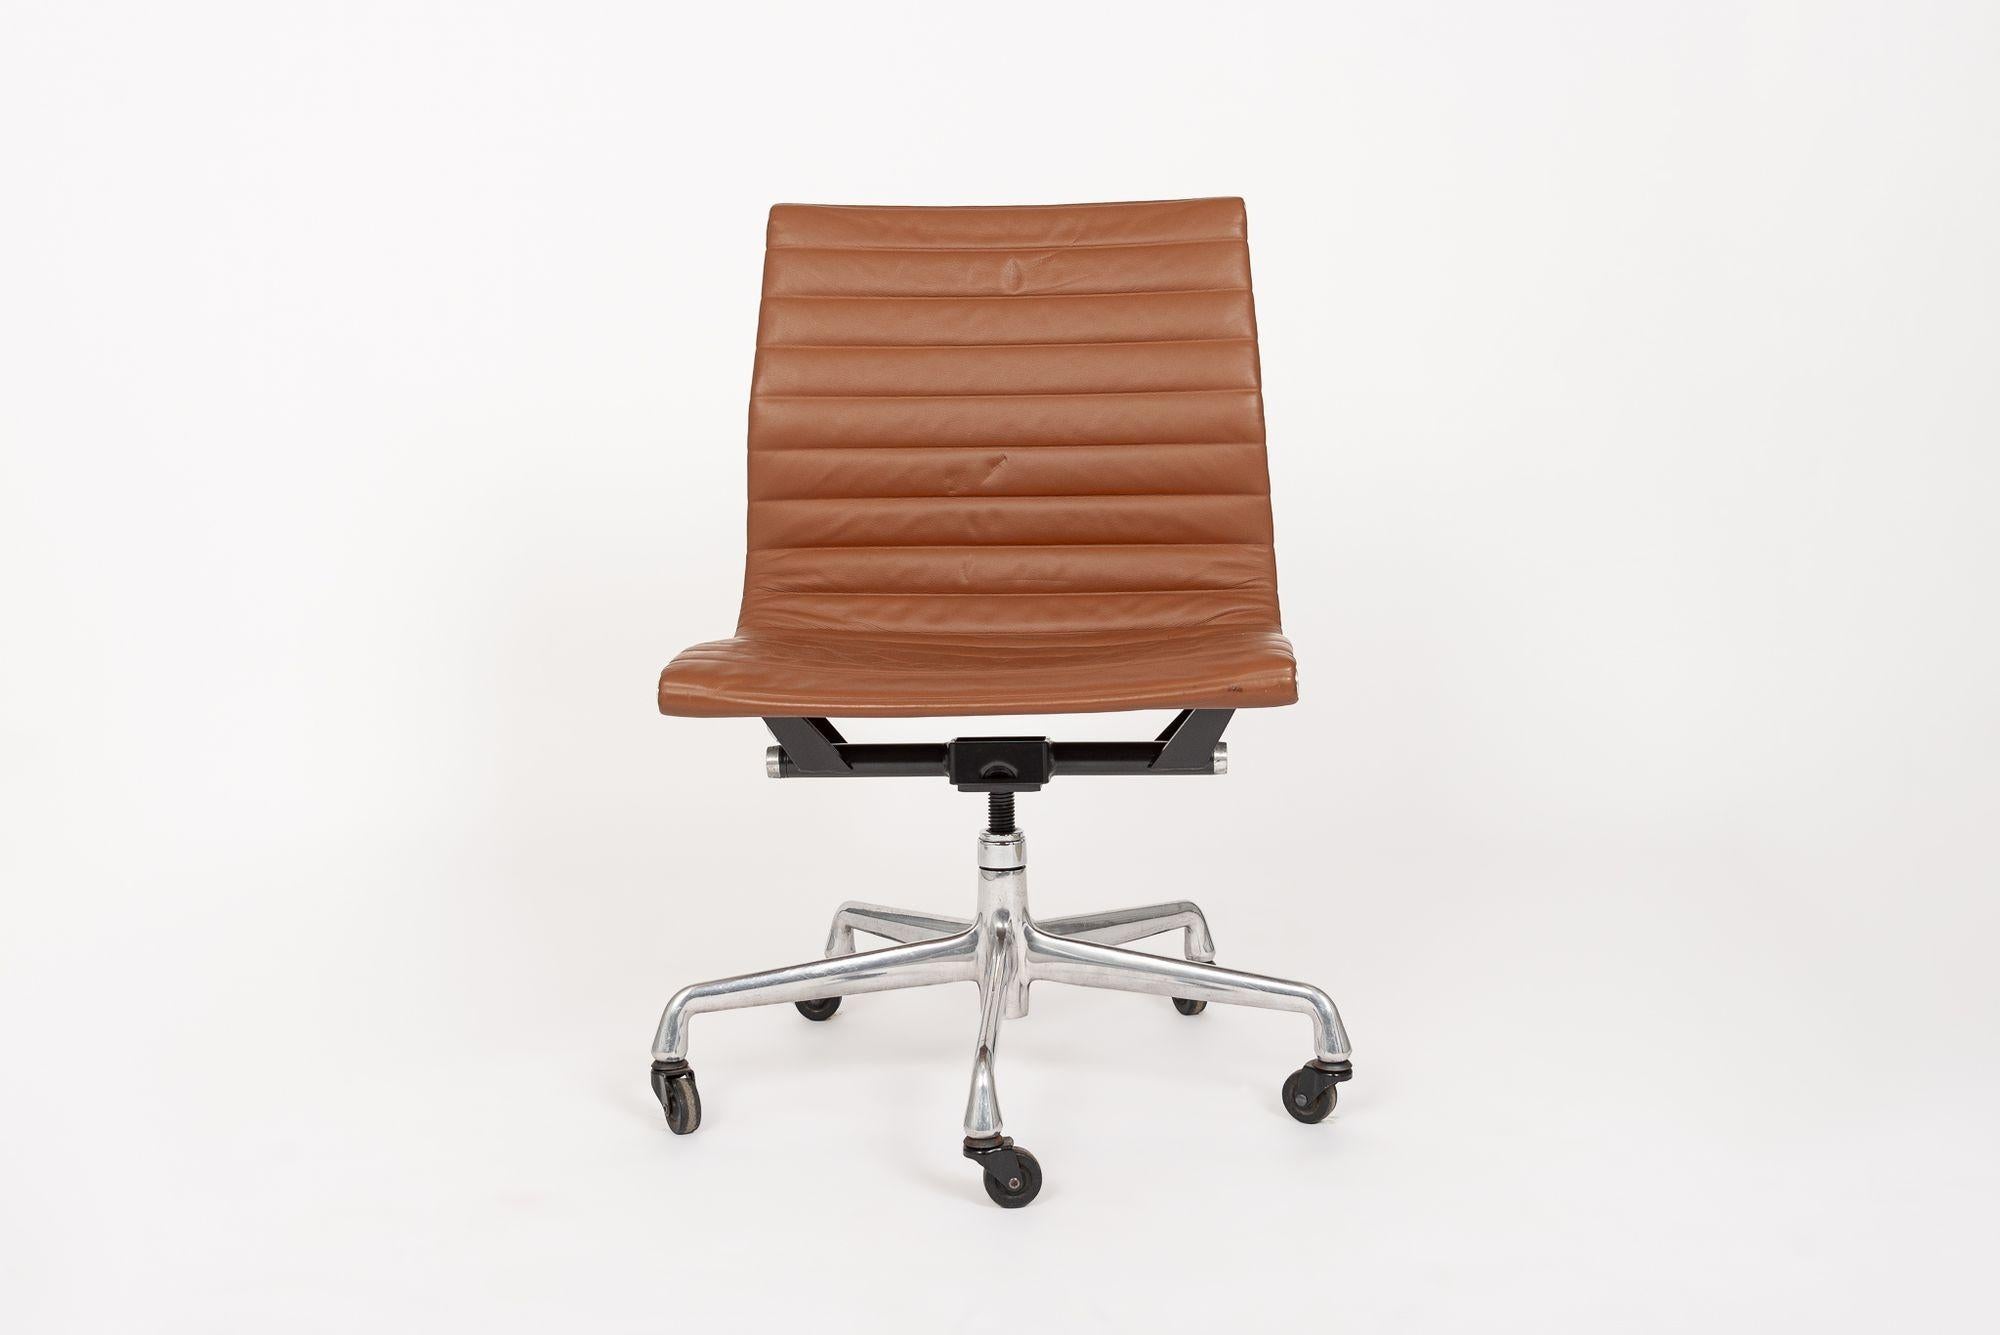 Der von Charles & Ray Eames für Herman Miller entworfene Bürostuhl Aluminum Group Thin Pad Management ist Teil der Eames Aluminum Group Collection. Diese unverwechselbaren Stühle sind das Ergebnis der Experimente der Eames mit Aluminium, das nach